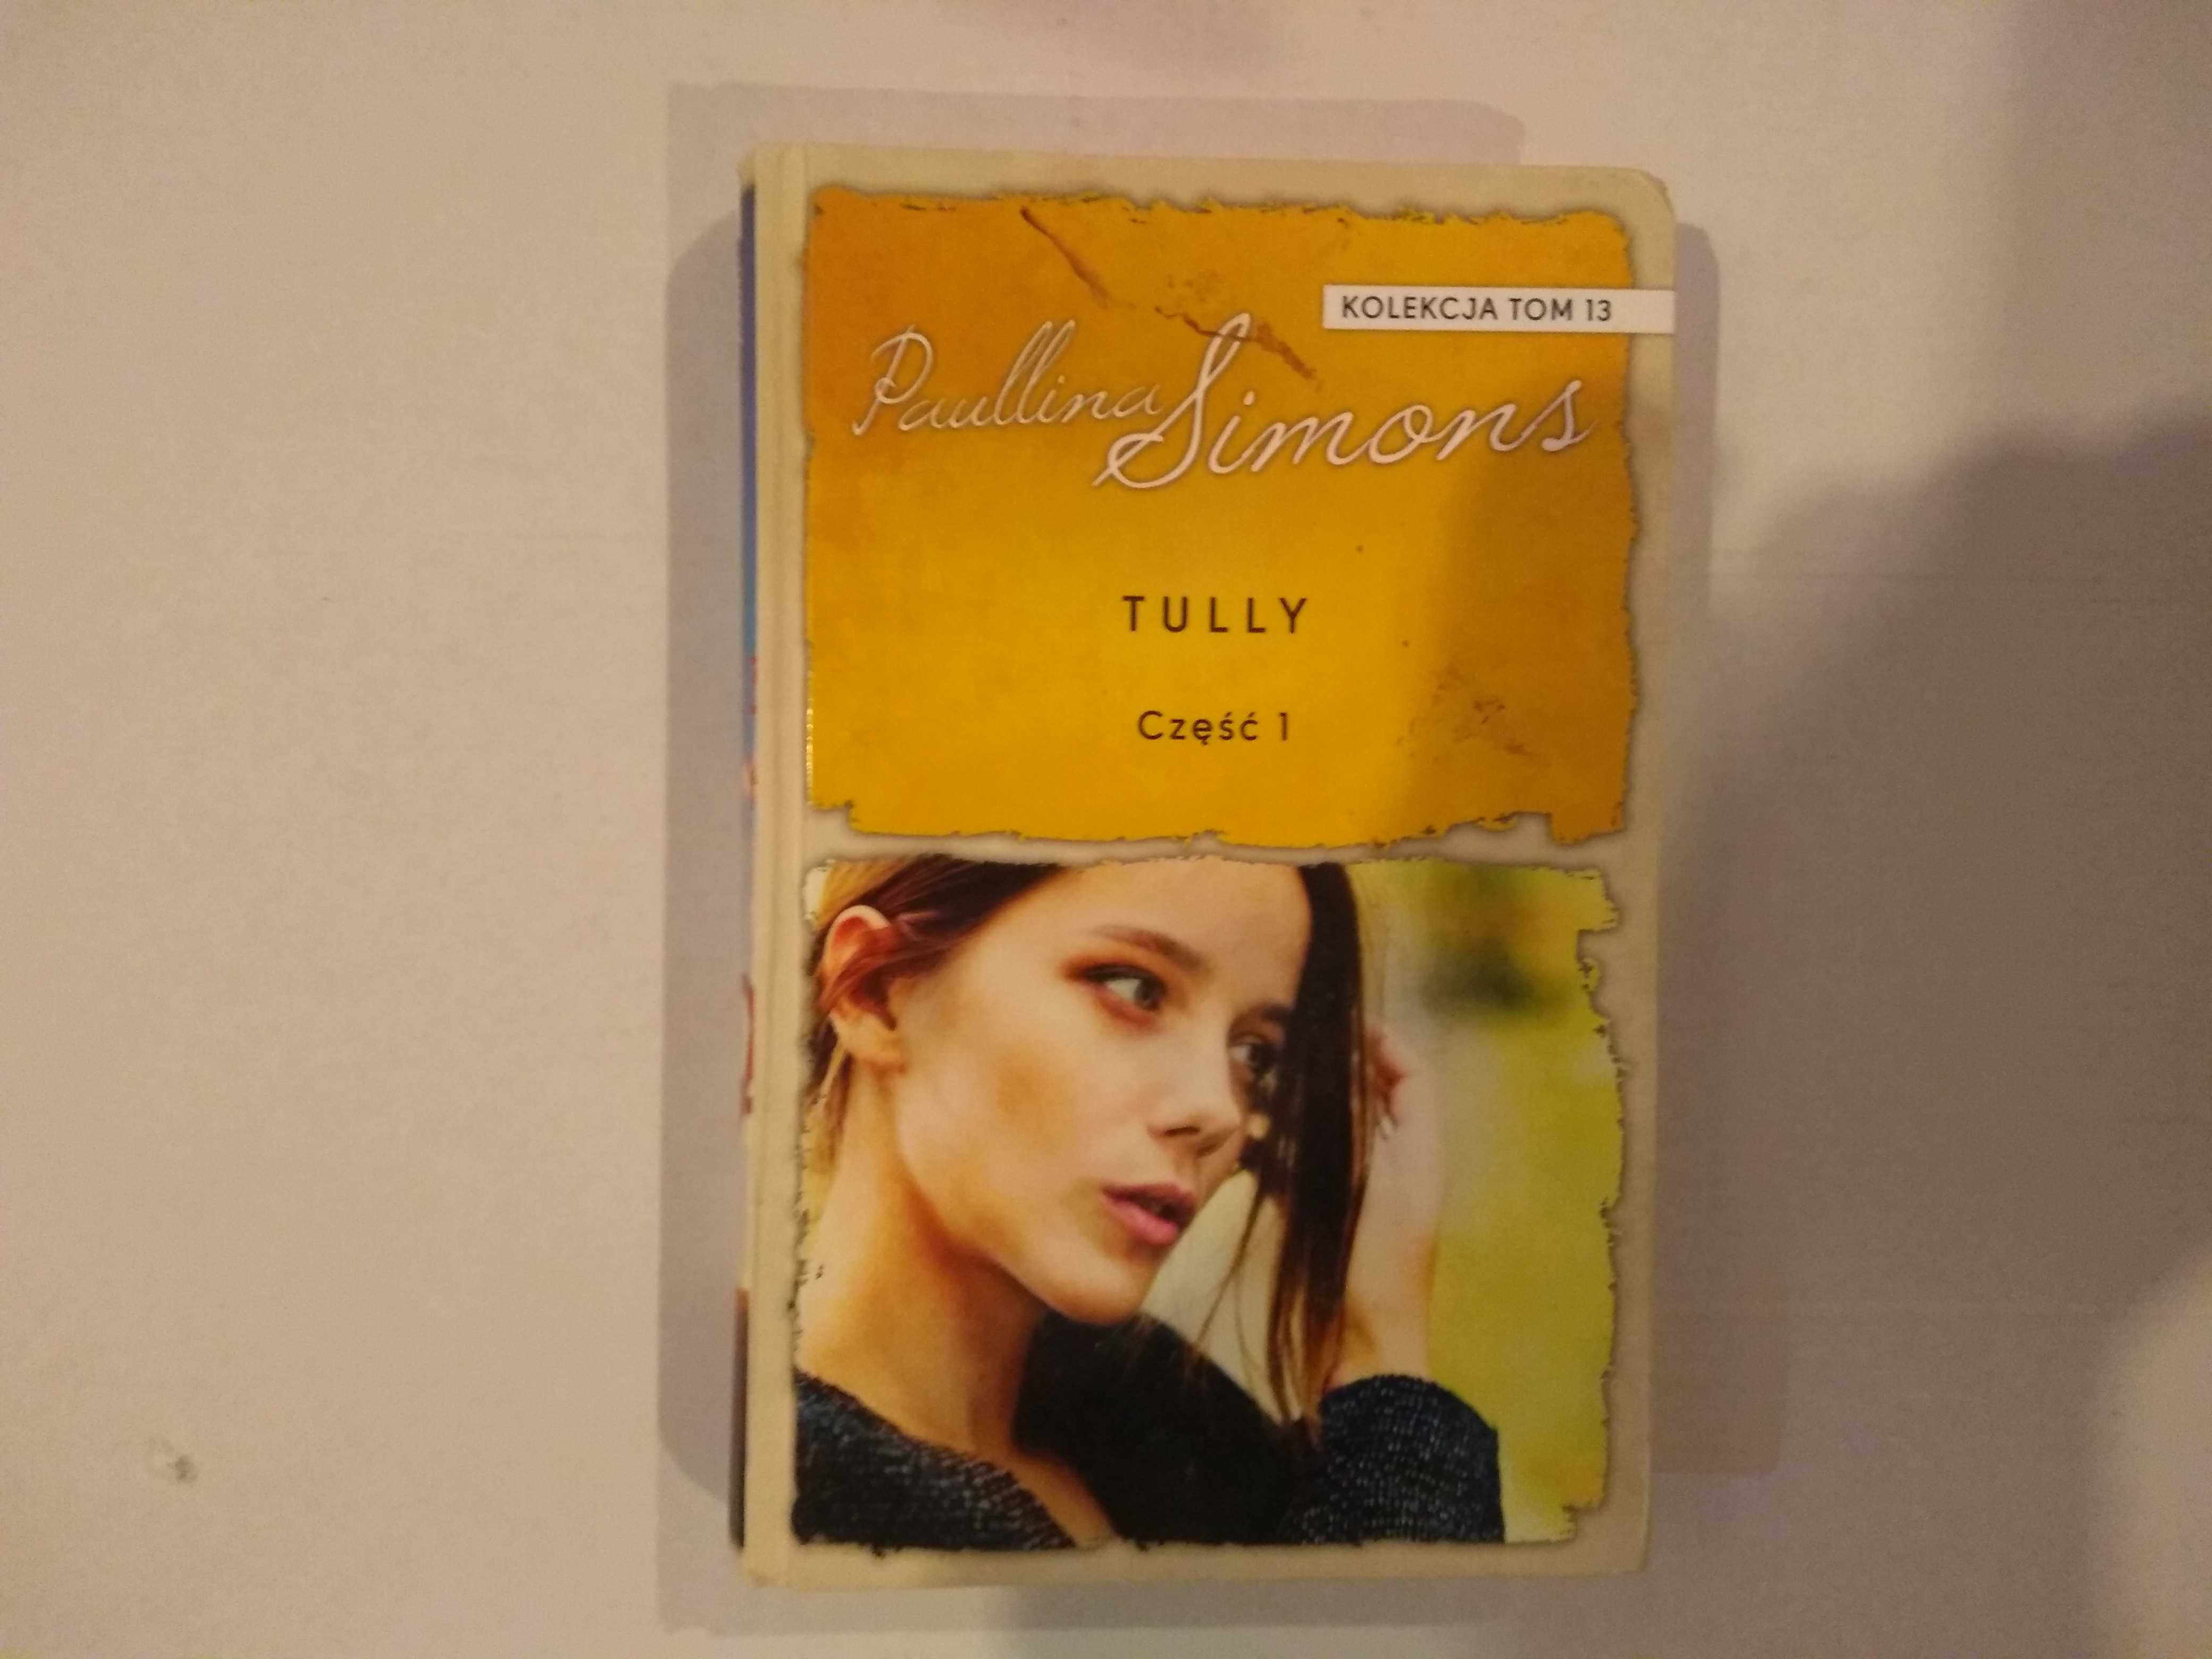 Dobra książka - Tully część 1 Paulina Simons (B1)